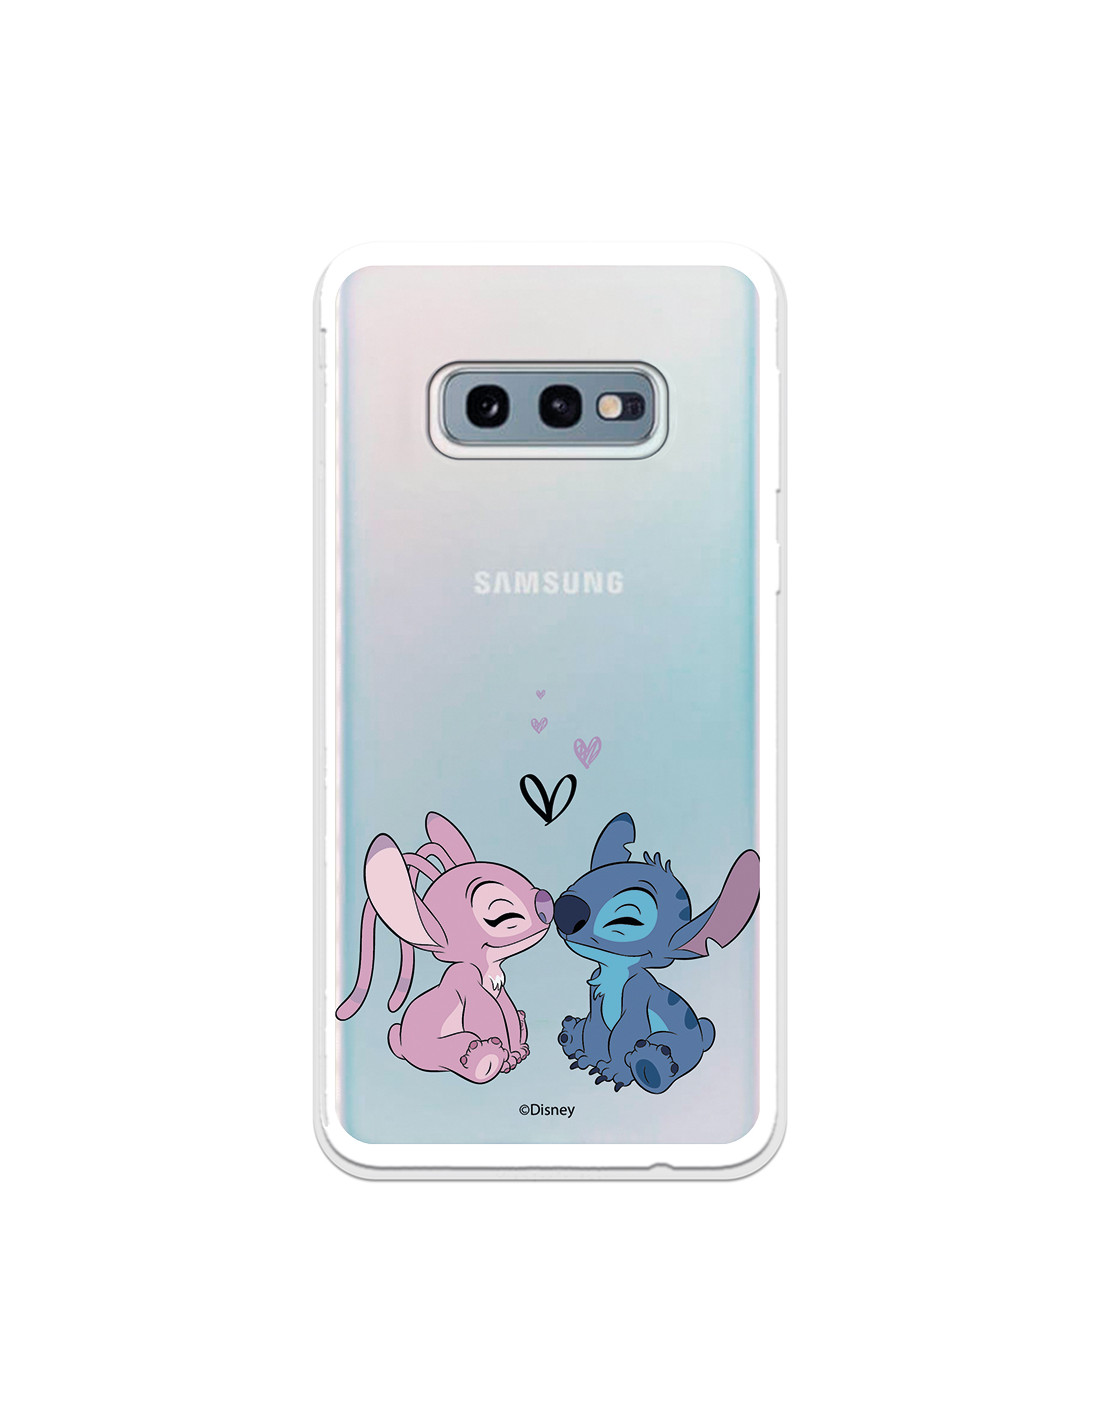  Zase Funda para Galaxy S10e, diseño para Samsung